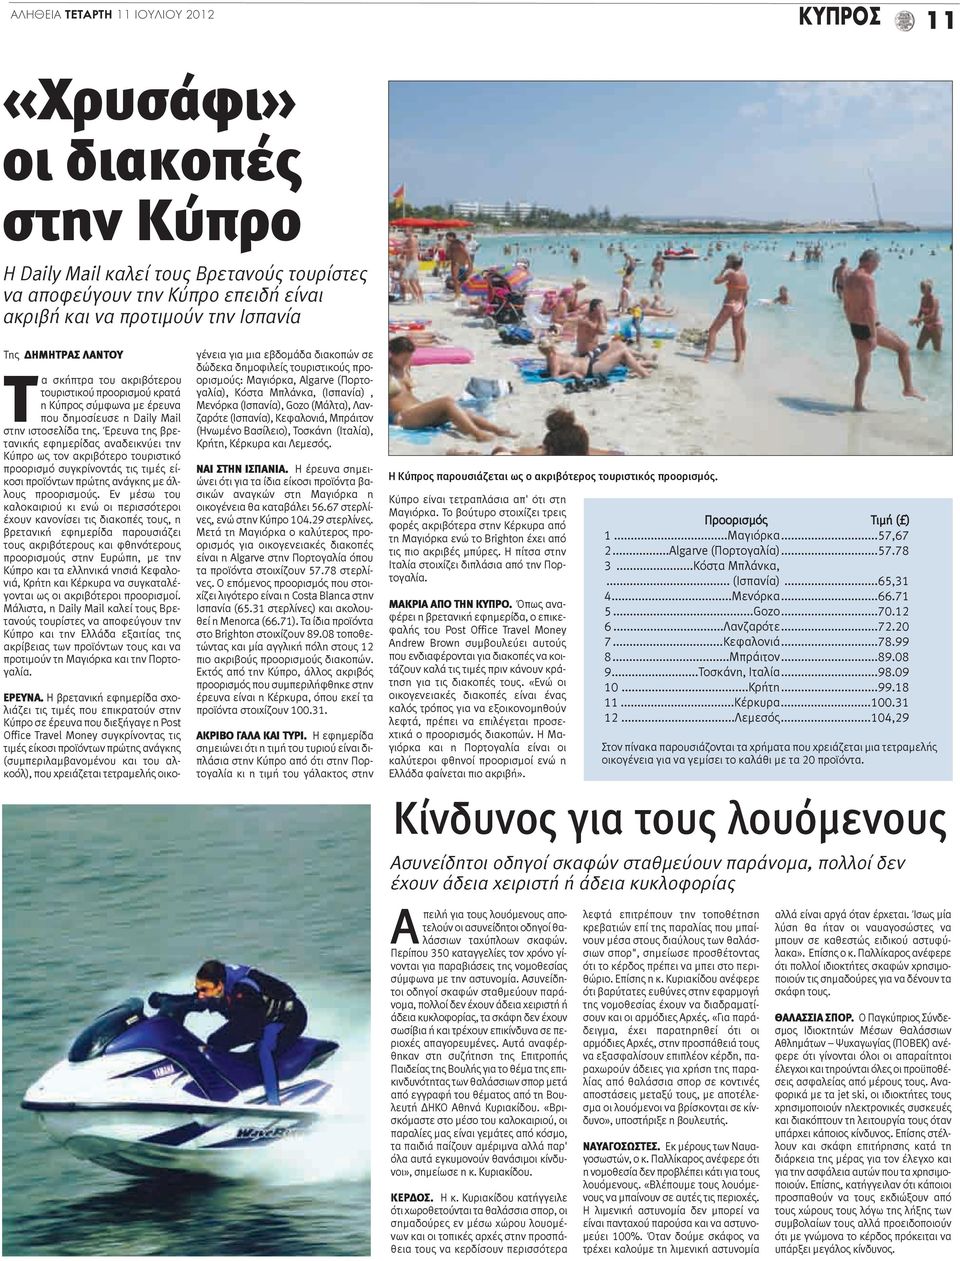 Έρευνα της βρετανικής εφημερίδας αναδεικνύει την Κύπρο ως τον ακριβότερο τουριστικό προορισμό συγκρίνοντάς τις τιμές είκοσι προϊόντων πρώτης ανάγκης με άλλους προορισμούς.